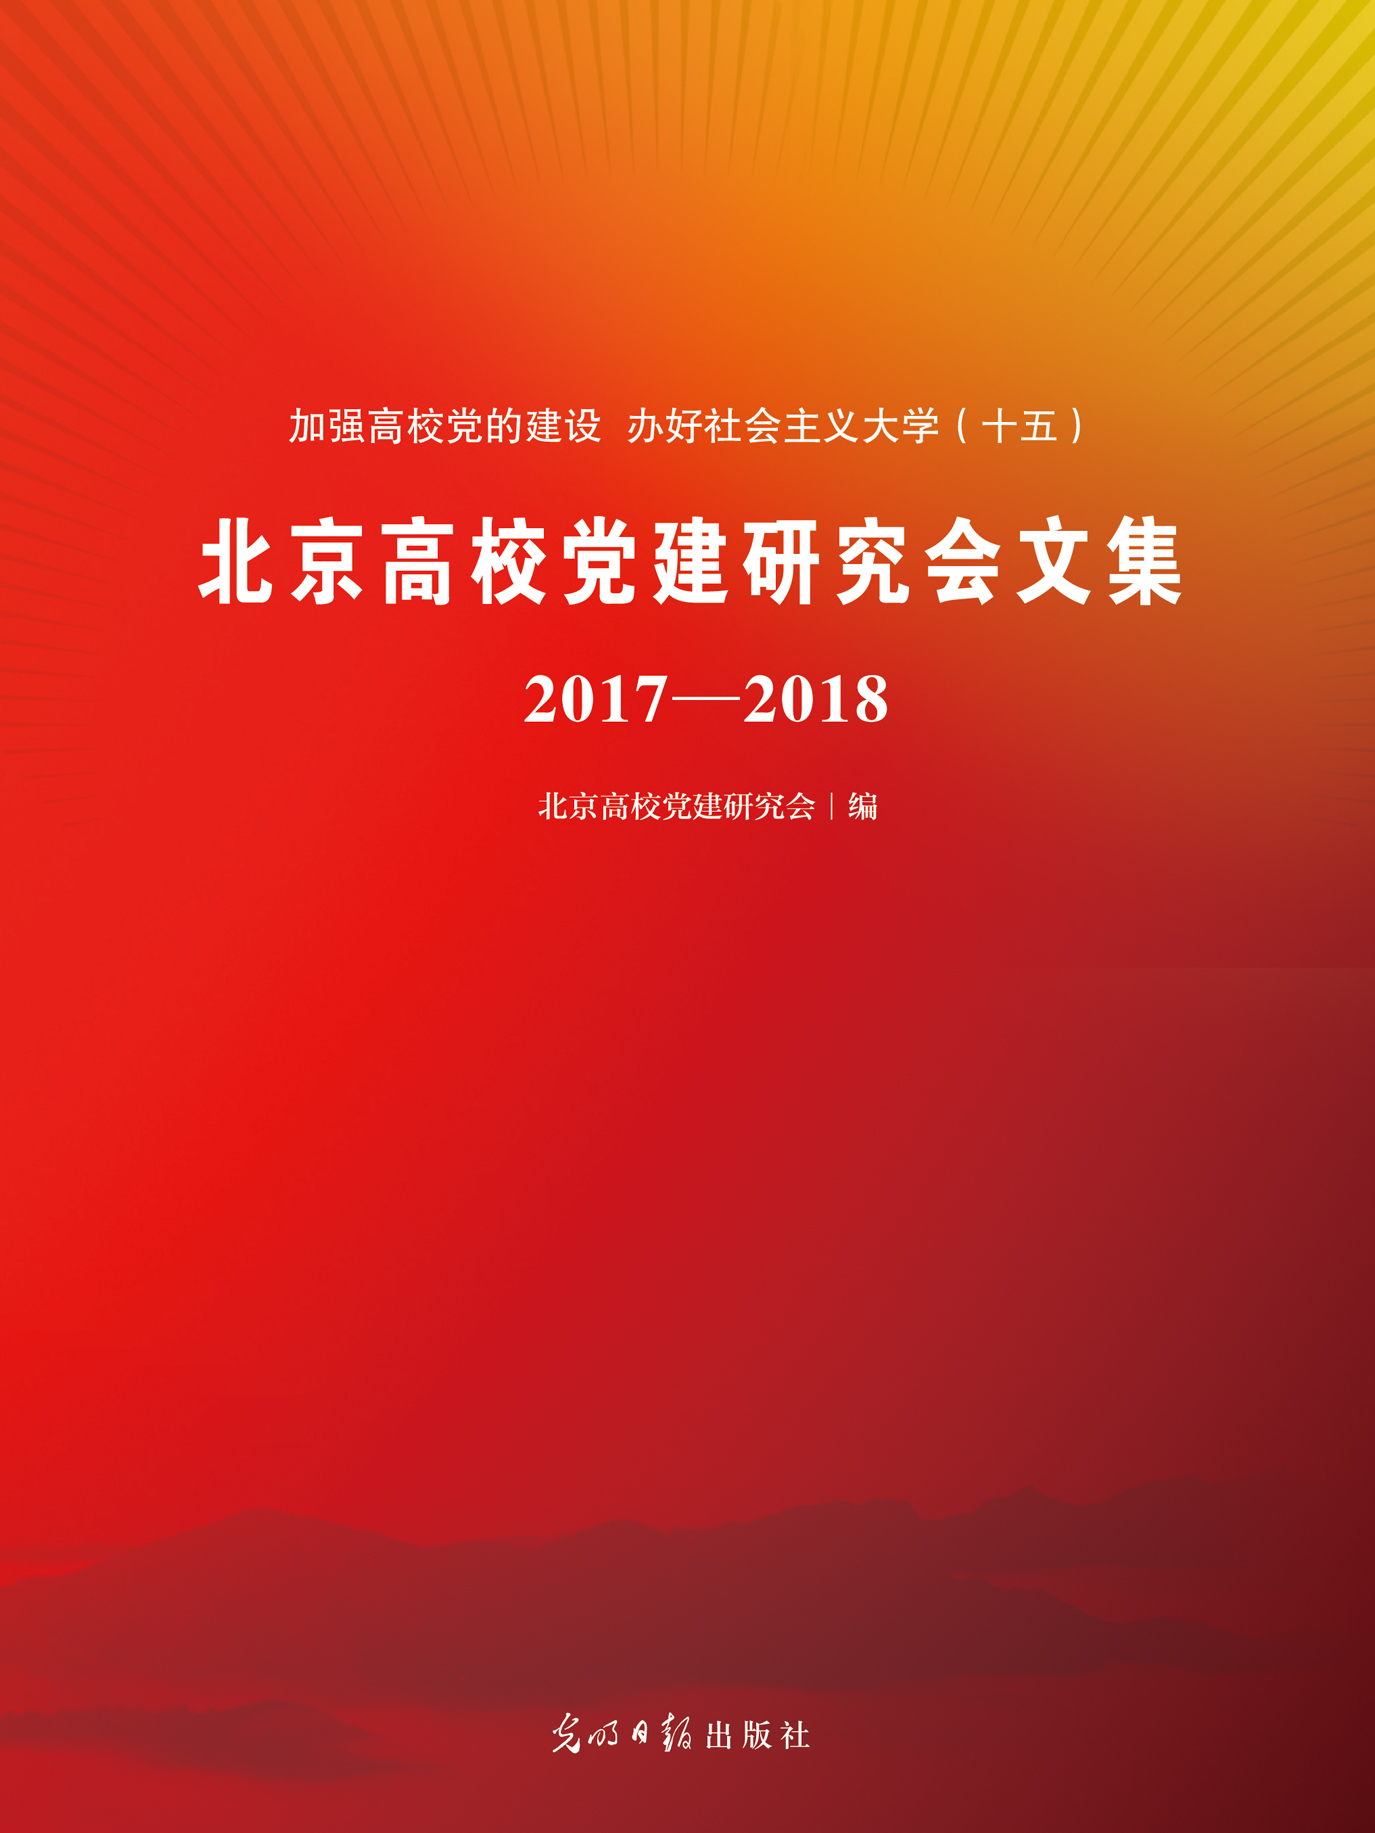 北京高校党建研究会文集 2017-2018